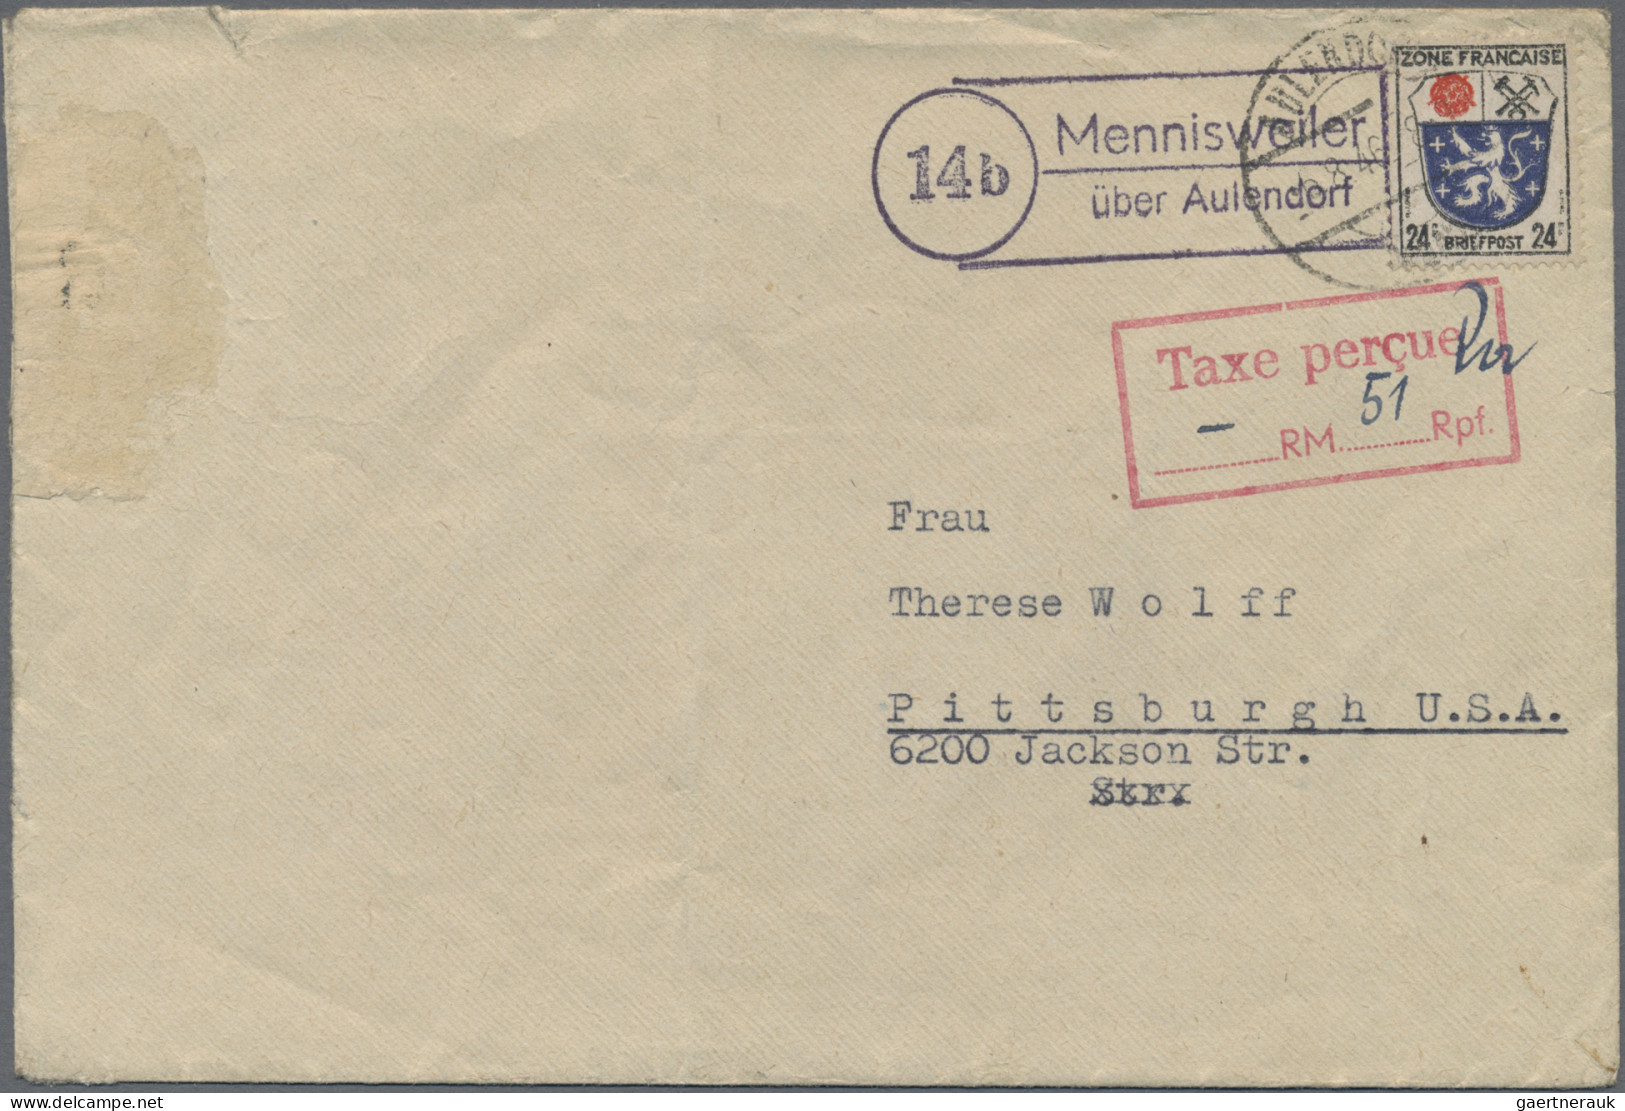 Bundesrepublik Deutschland: 1945/1968, umfangreicher Bestand von ca. 525 Briefen